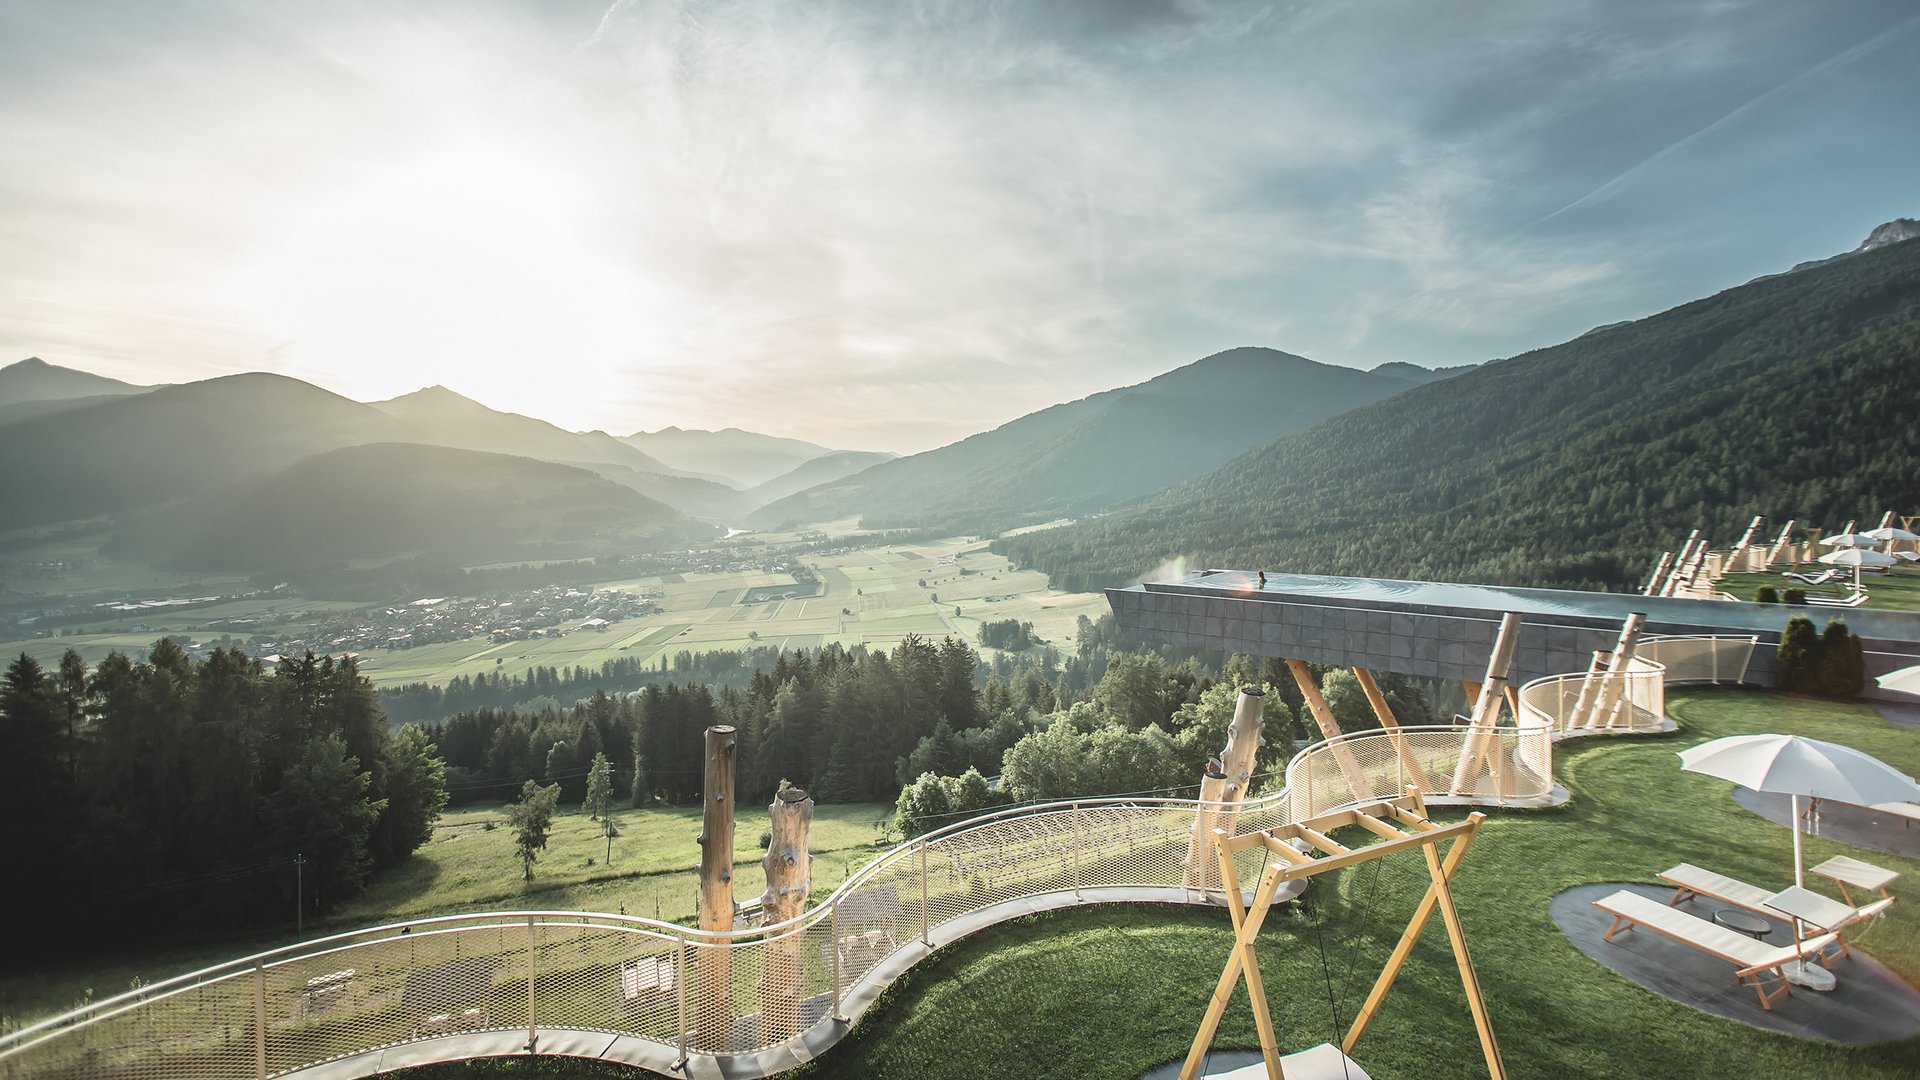 Parapendio in Alto Adige: il sogno di volare